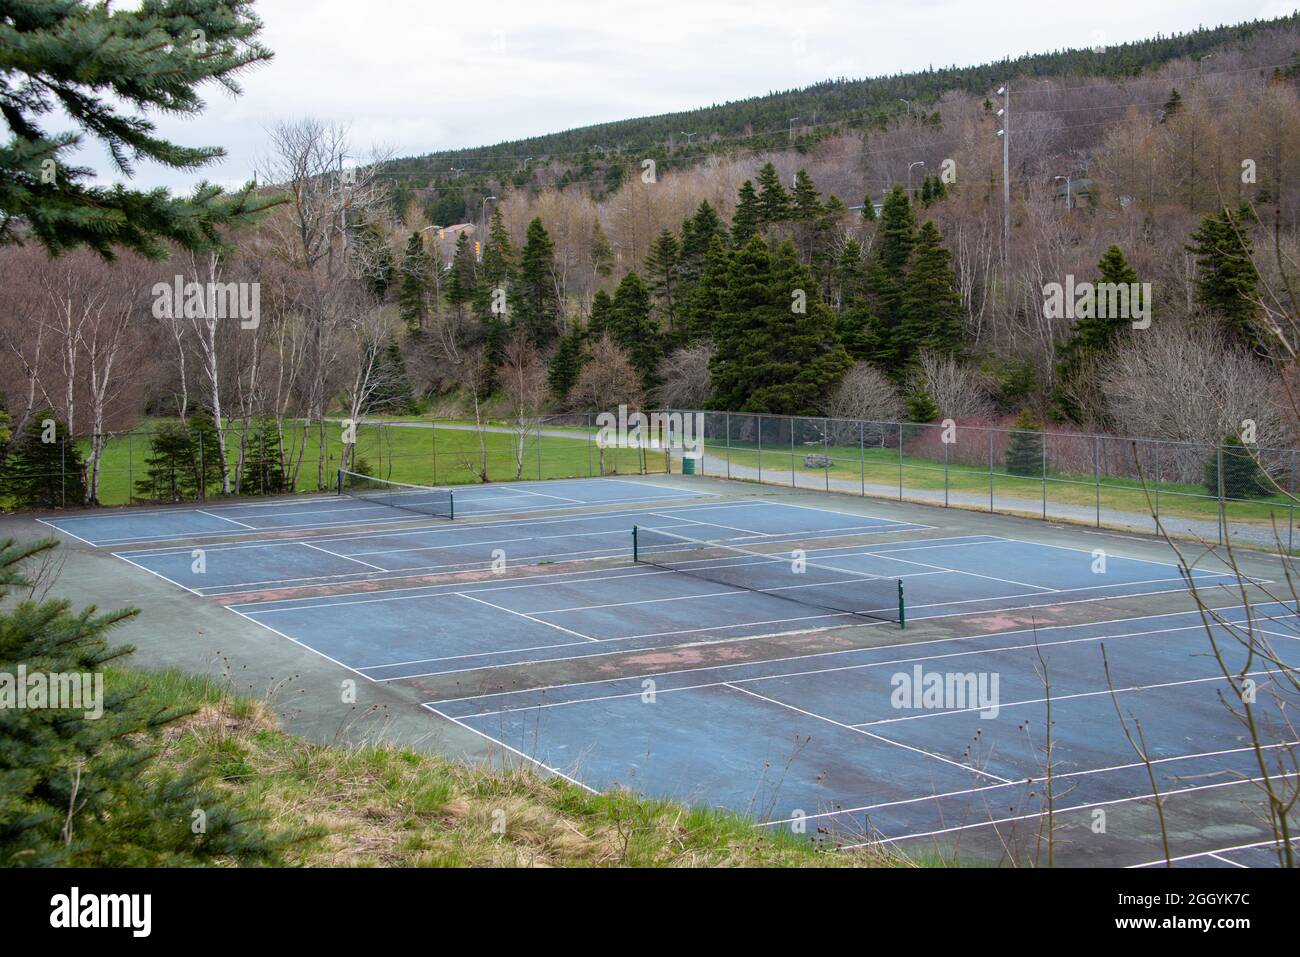 Un campo da tennis all'aperto con vernice blu, linee bianche e una rete da  tennis a maglia nera. Il bordo del campo ha linee bianche Foto stock - Alamy